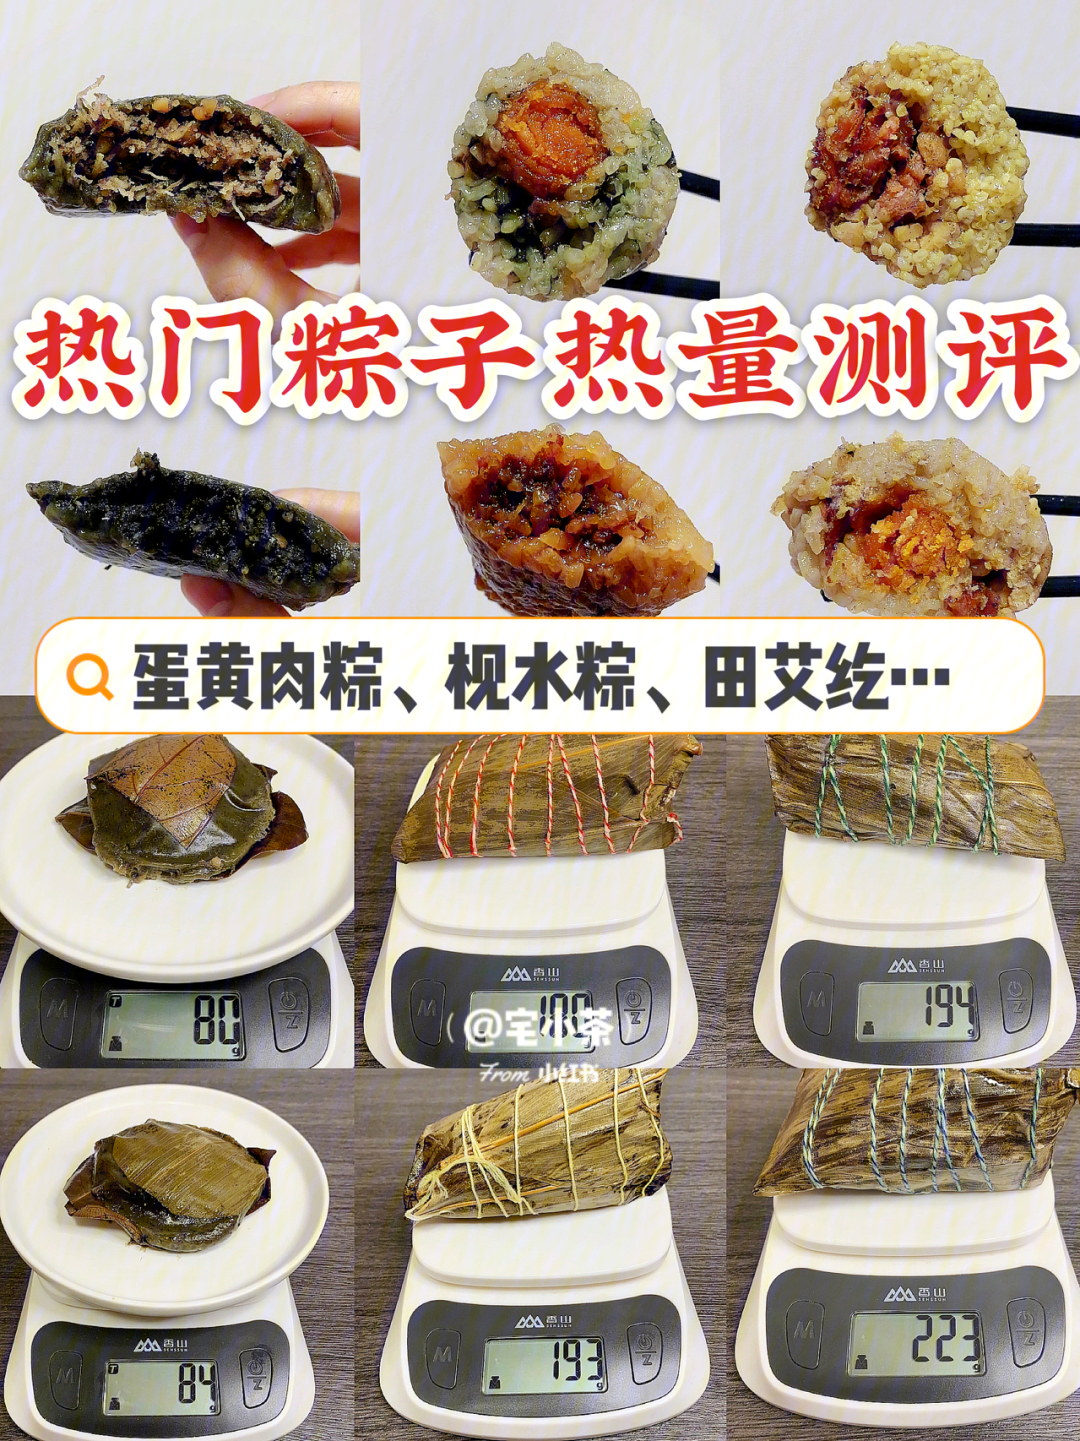 73本次热量测评包括:蛋黄叉烧粽:一个净重207g,热量451kcal蛤蒌